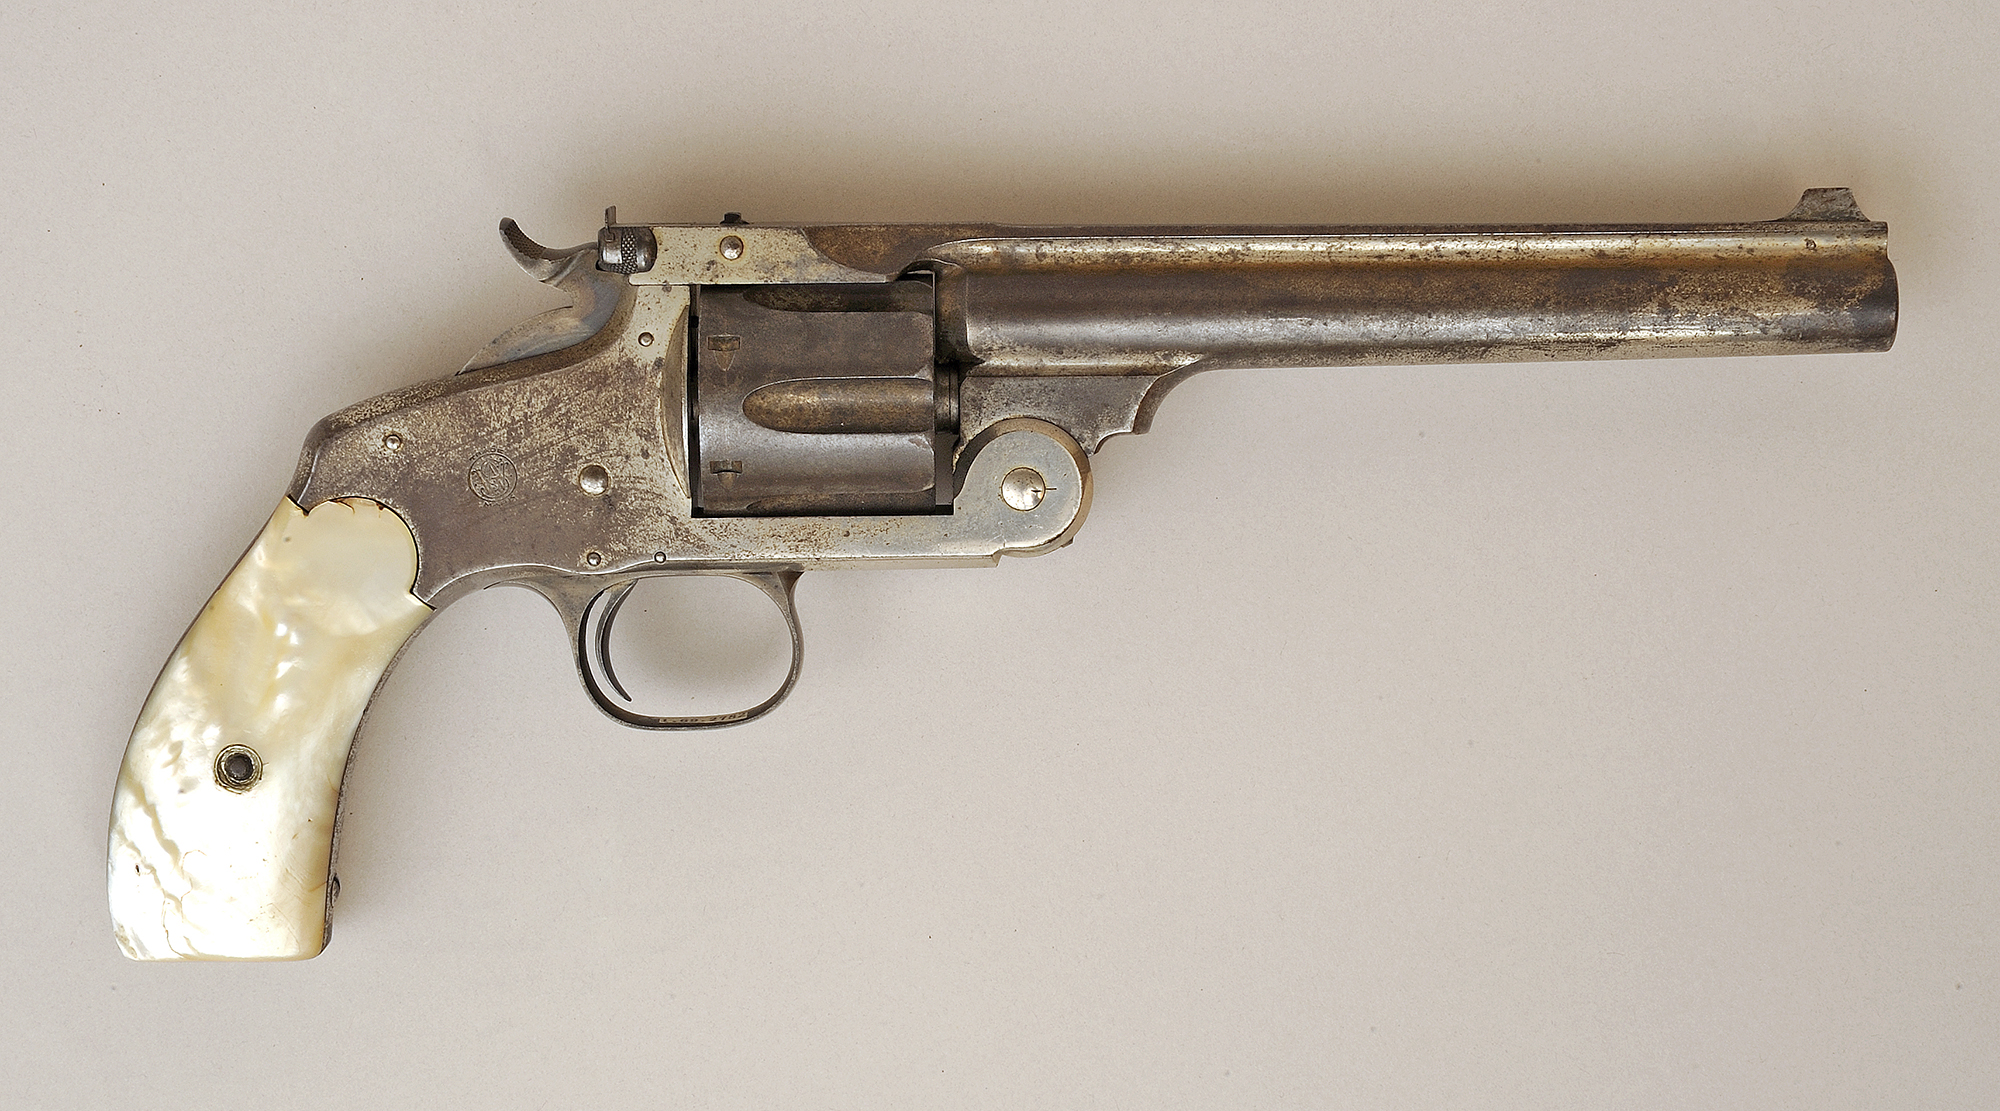 Annie Oakley’s Smith & Wesson No. 3 Revolver